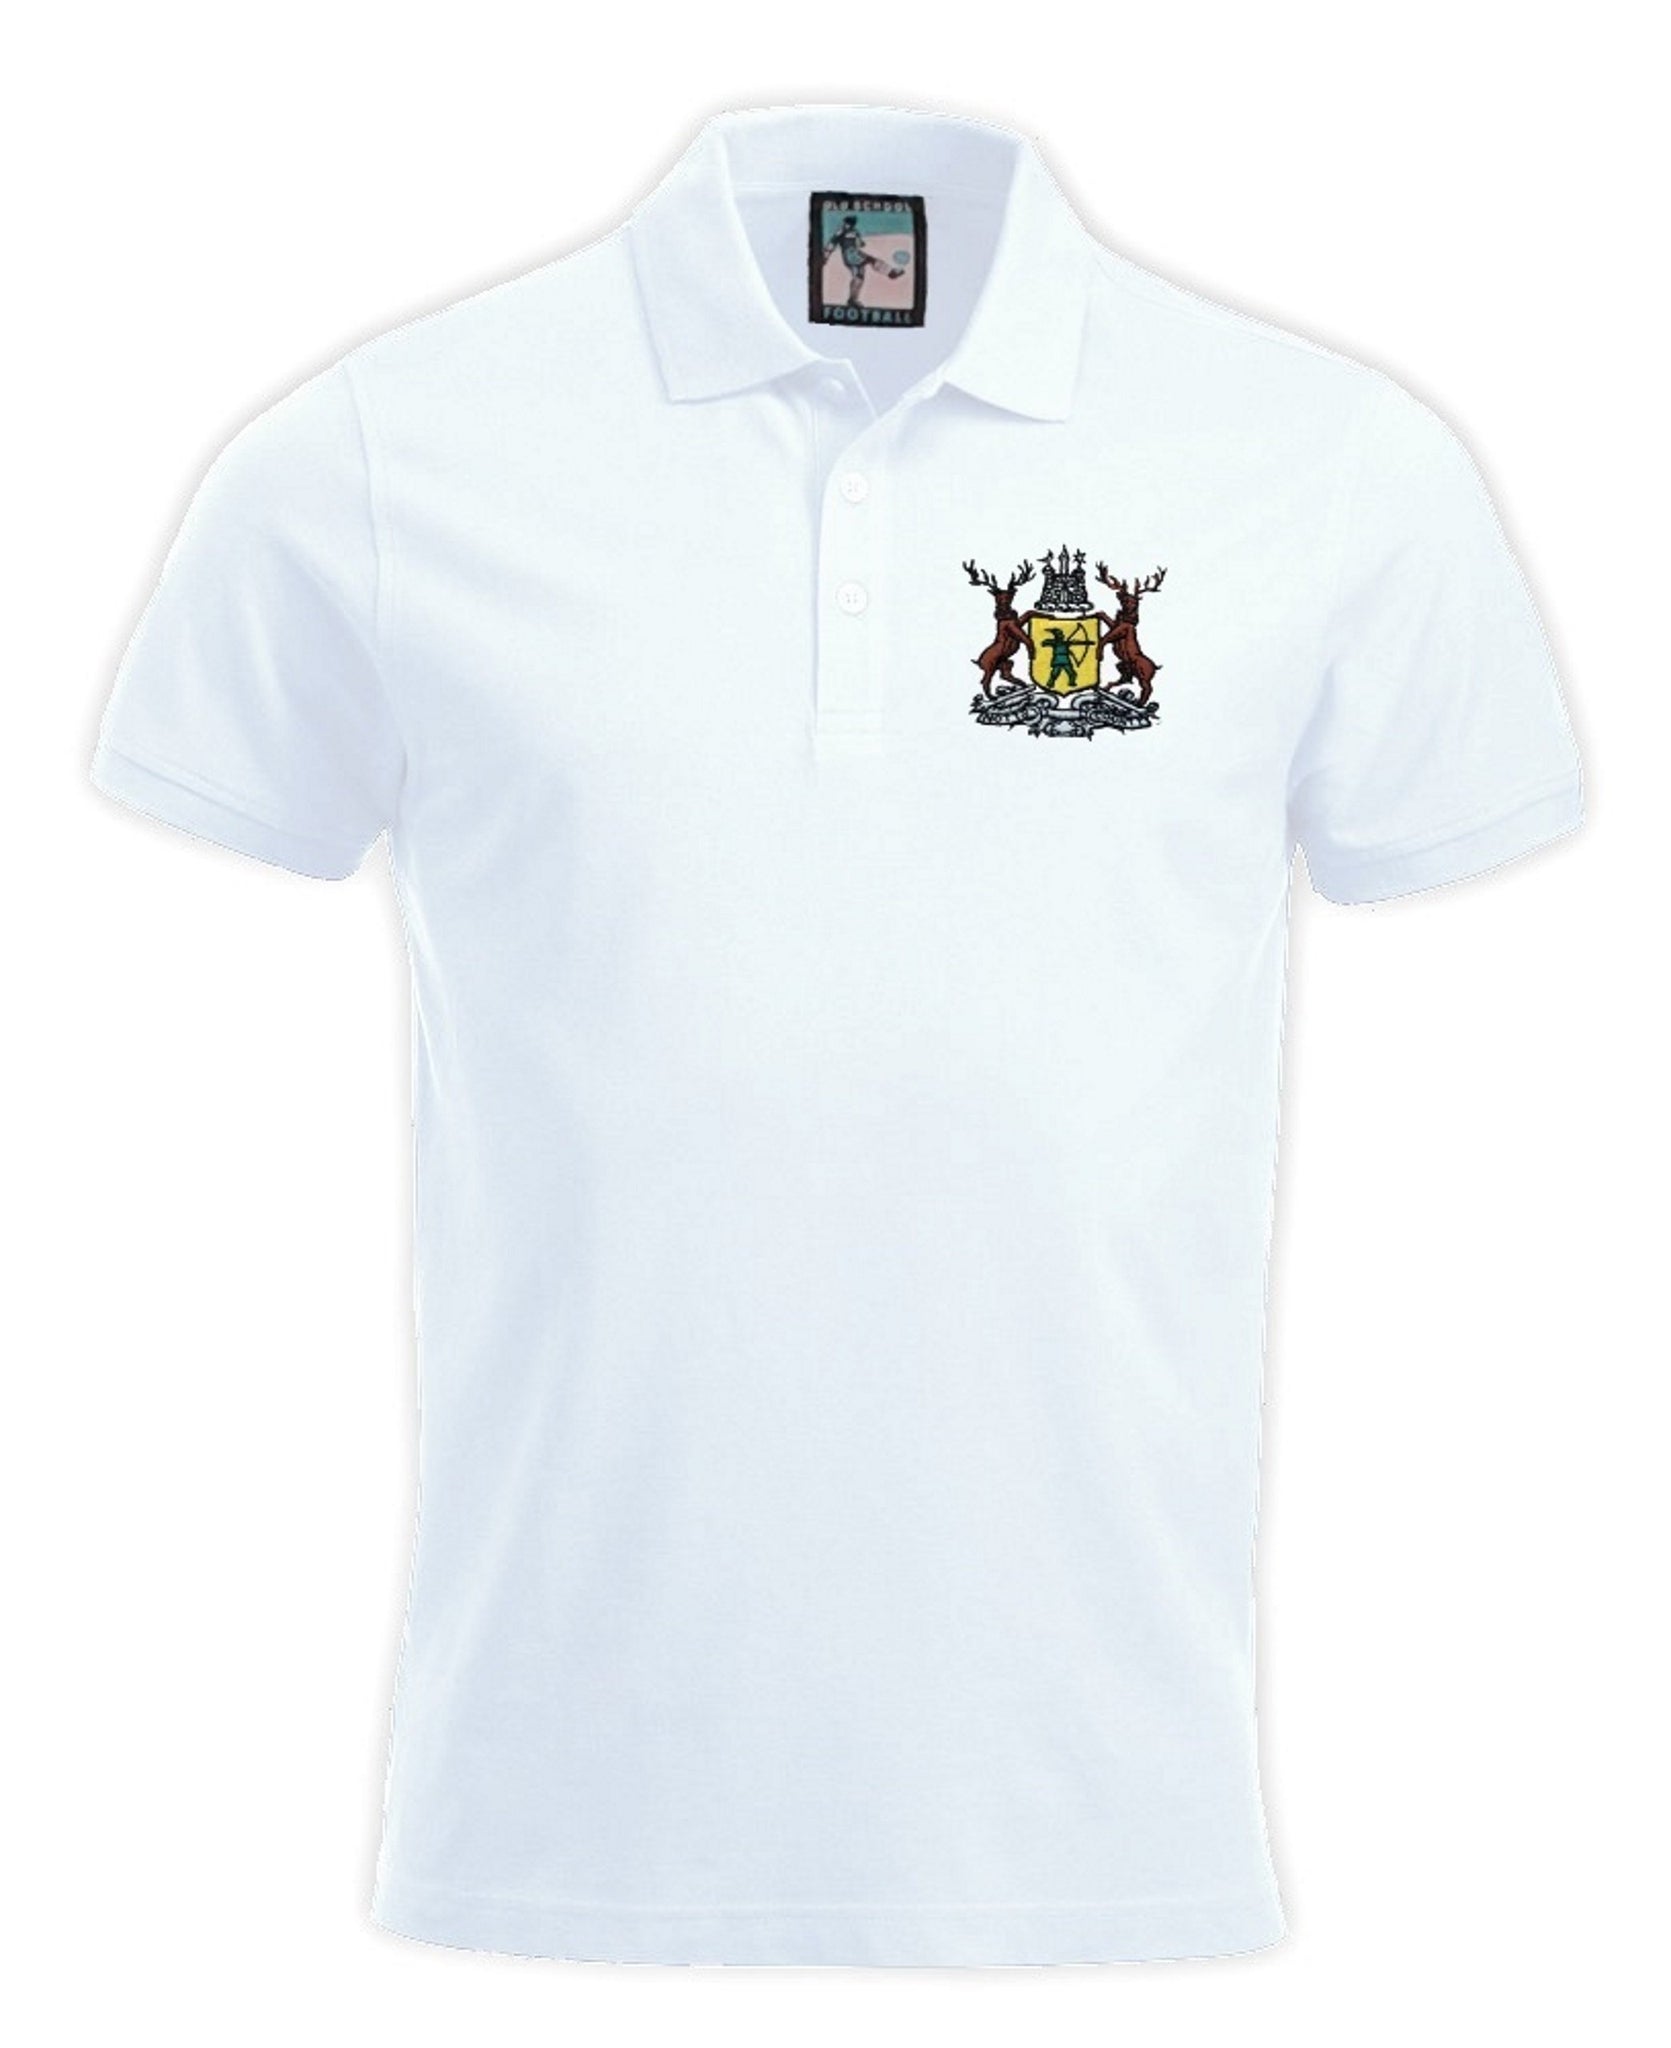 Notts County Retro 1950s / 1970s Football Polo Shirt - Polo